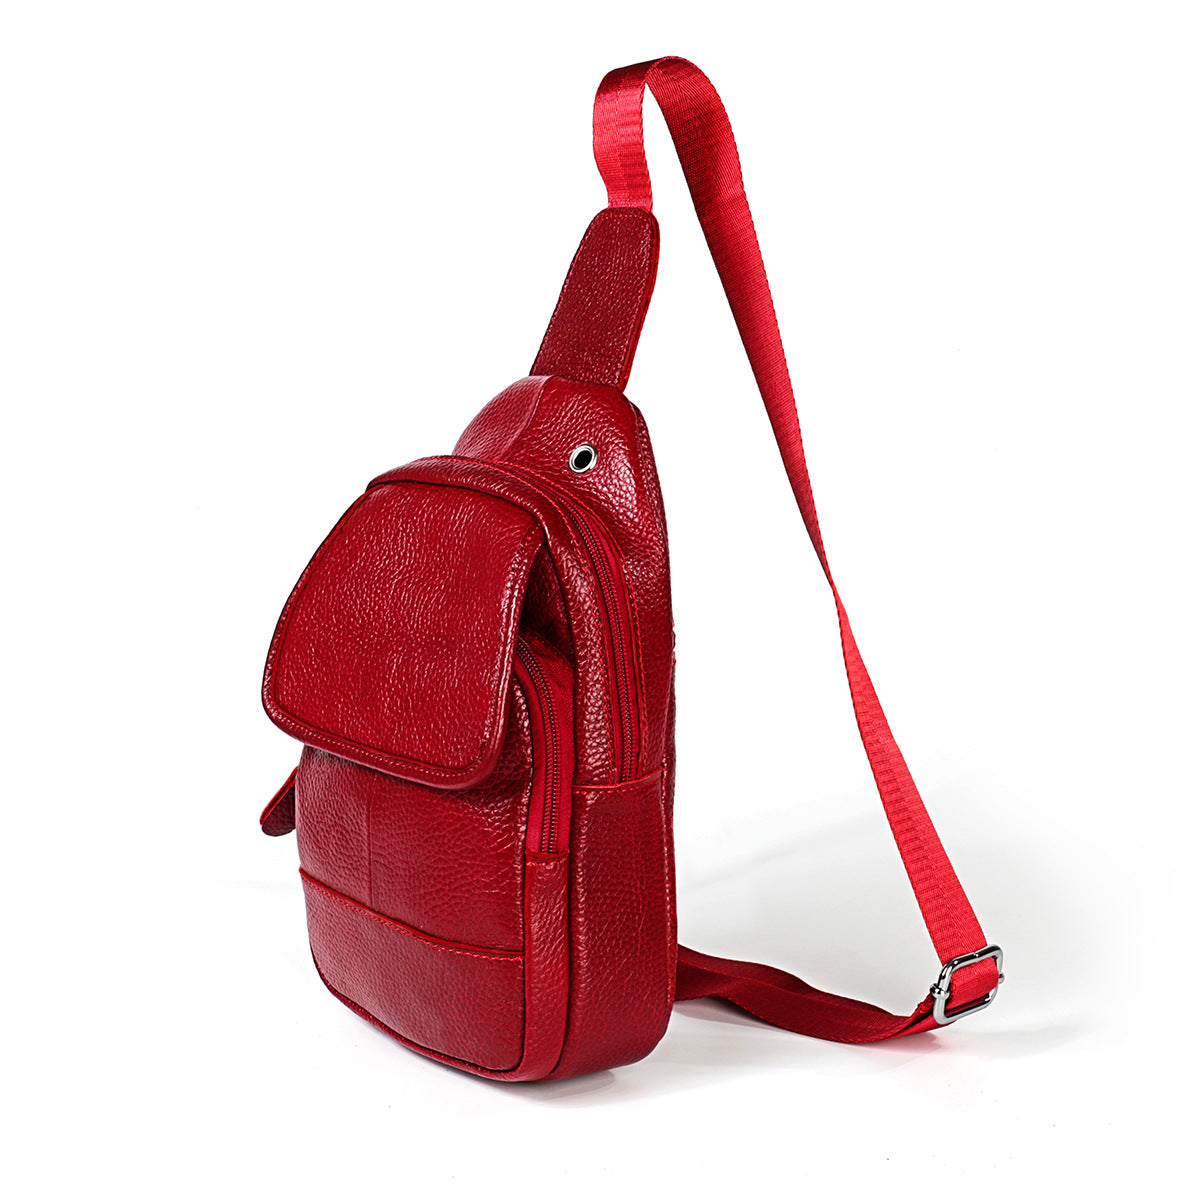 Genuine Leather Sling Backpack, Multipurpose Crossbody Shoulder Bag Travel Chest Bag Hiking Daypack